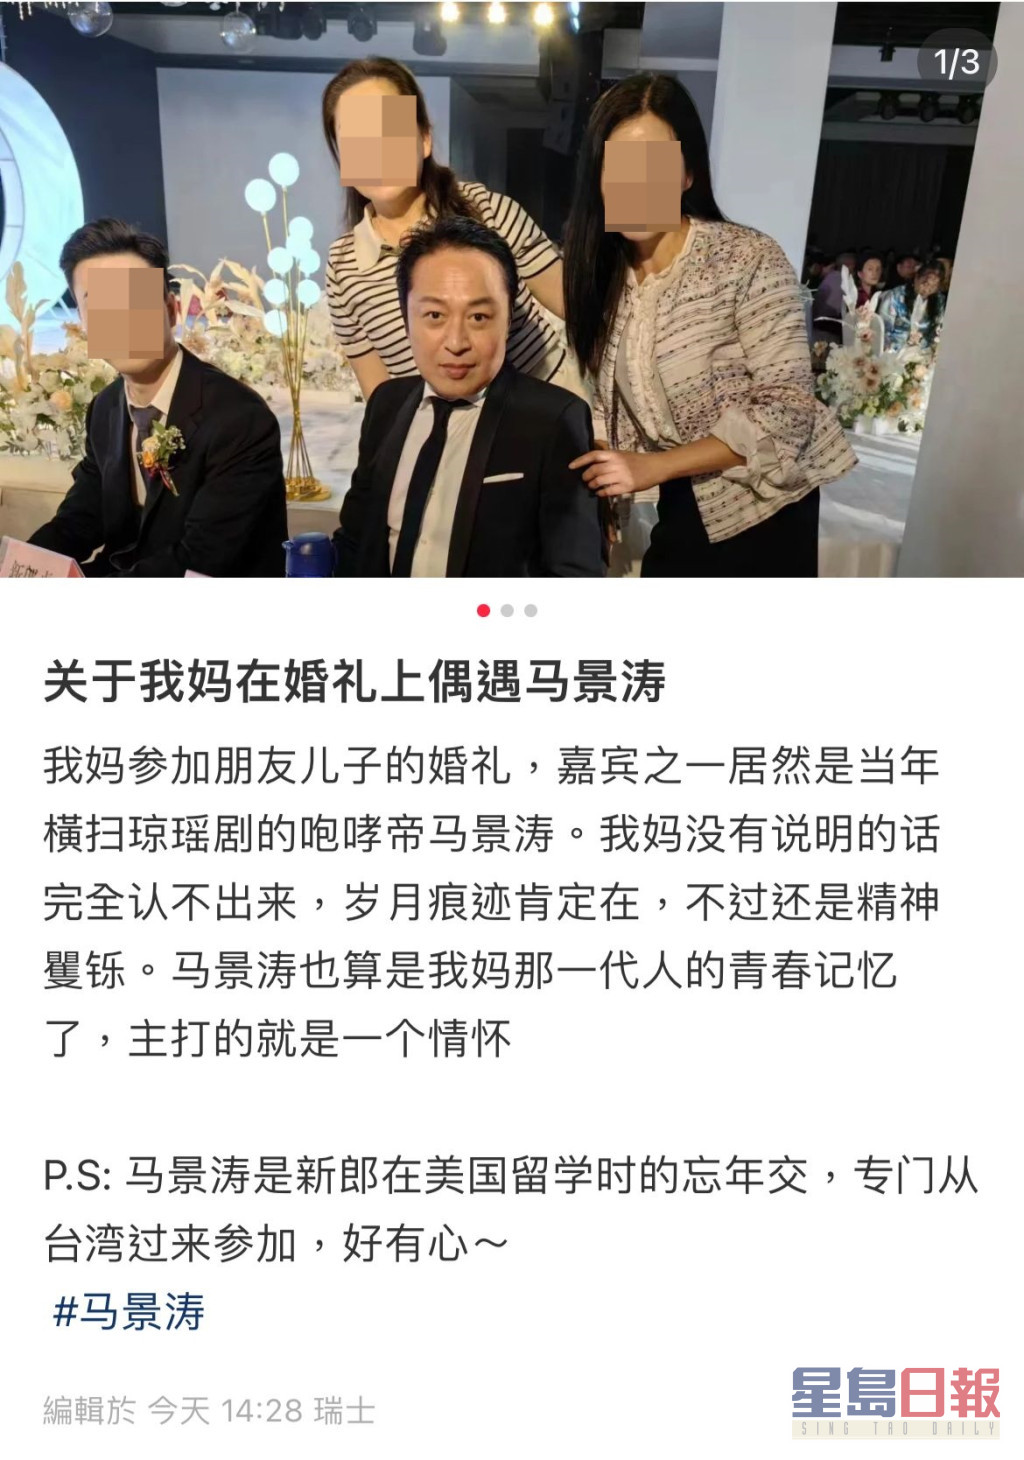 網民透露新郎是馬景濤在美國留學時的忘年交，此趟特意從台灣飛抵當地觀禮，席間也有獻唱。